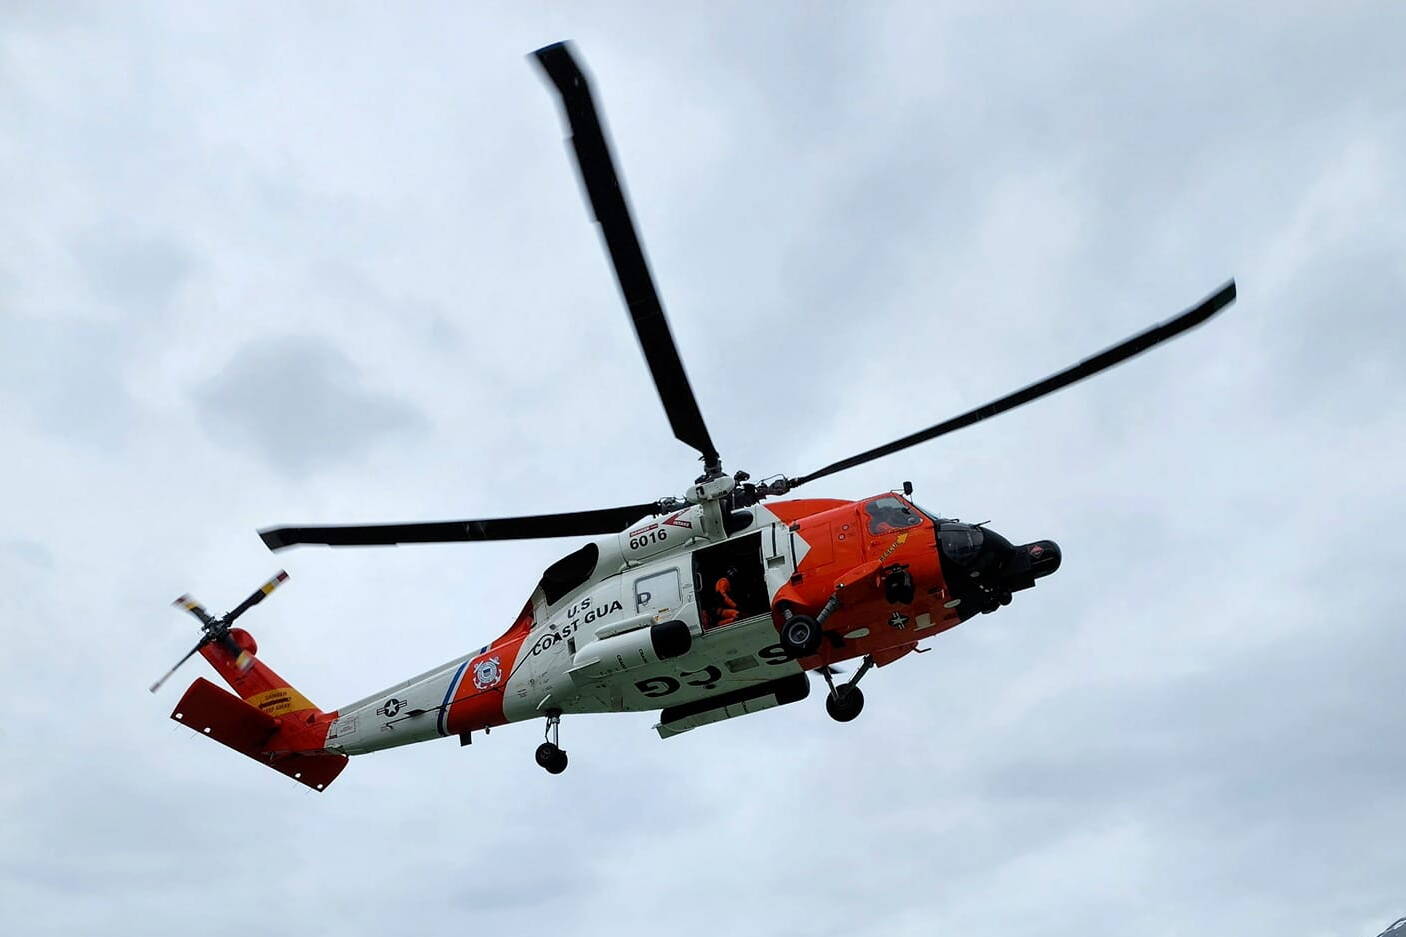 A U.S. Coast Guard helicopter on duty in Southeast Alaska. (Photo by the U.S. Coast Guard)